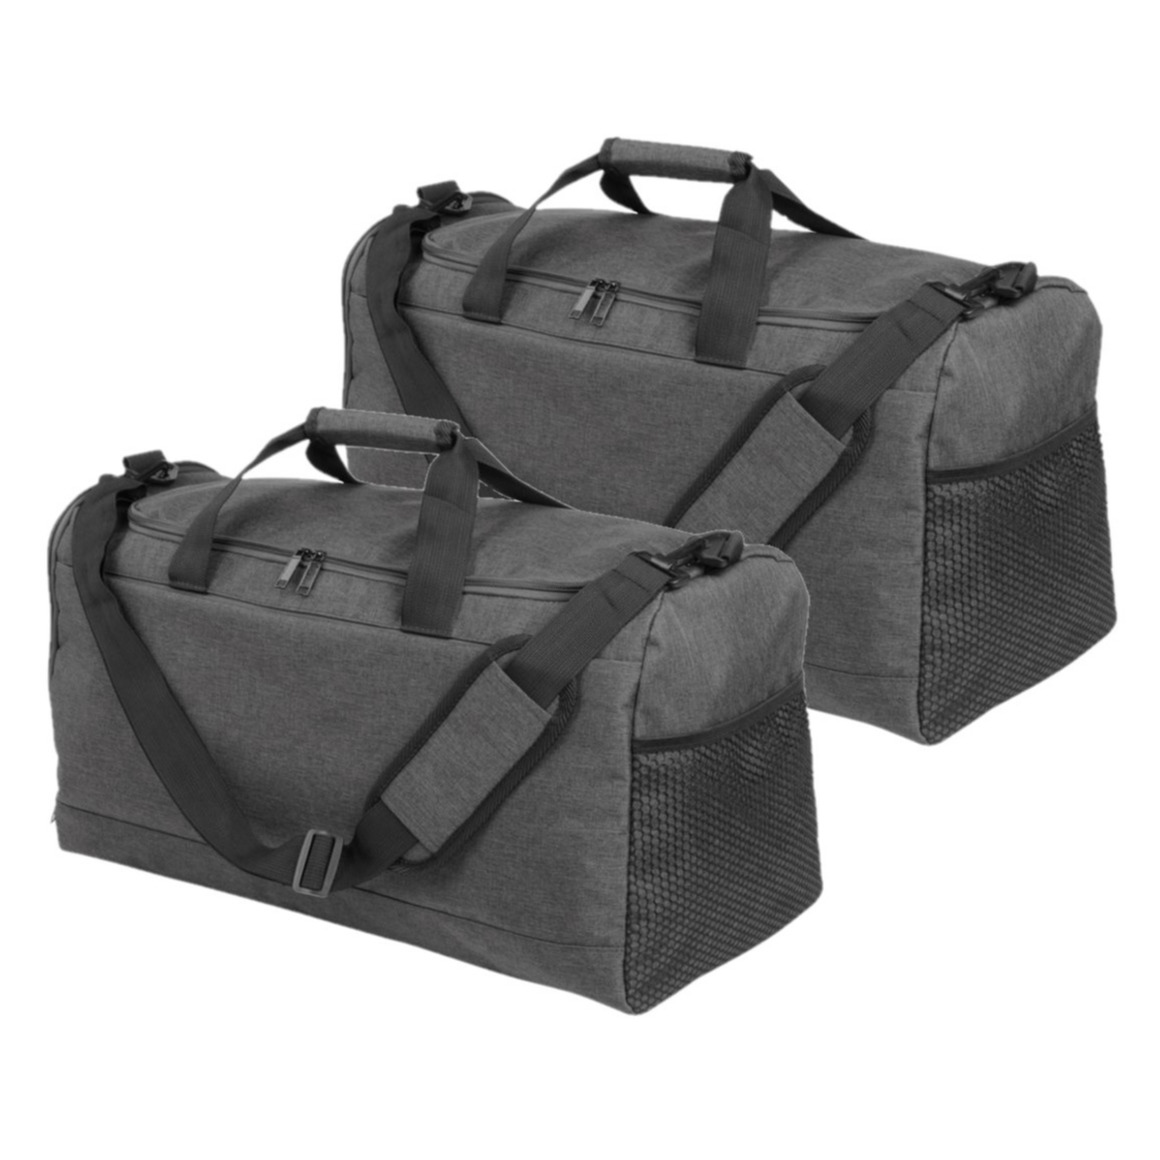 Set van 2x stuks donkergrijze sporttassen-weekendtassen met schoenenvak 54 cm